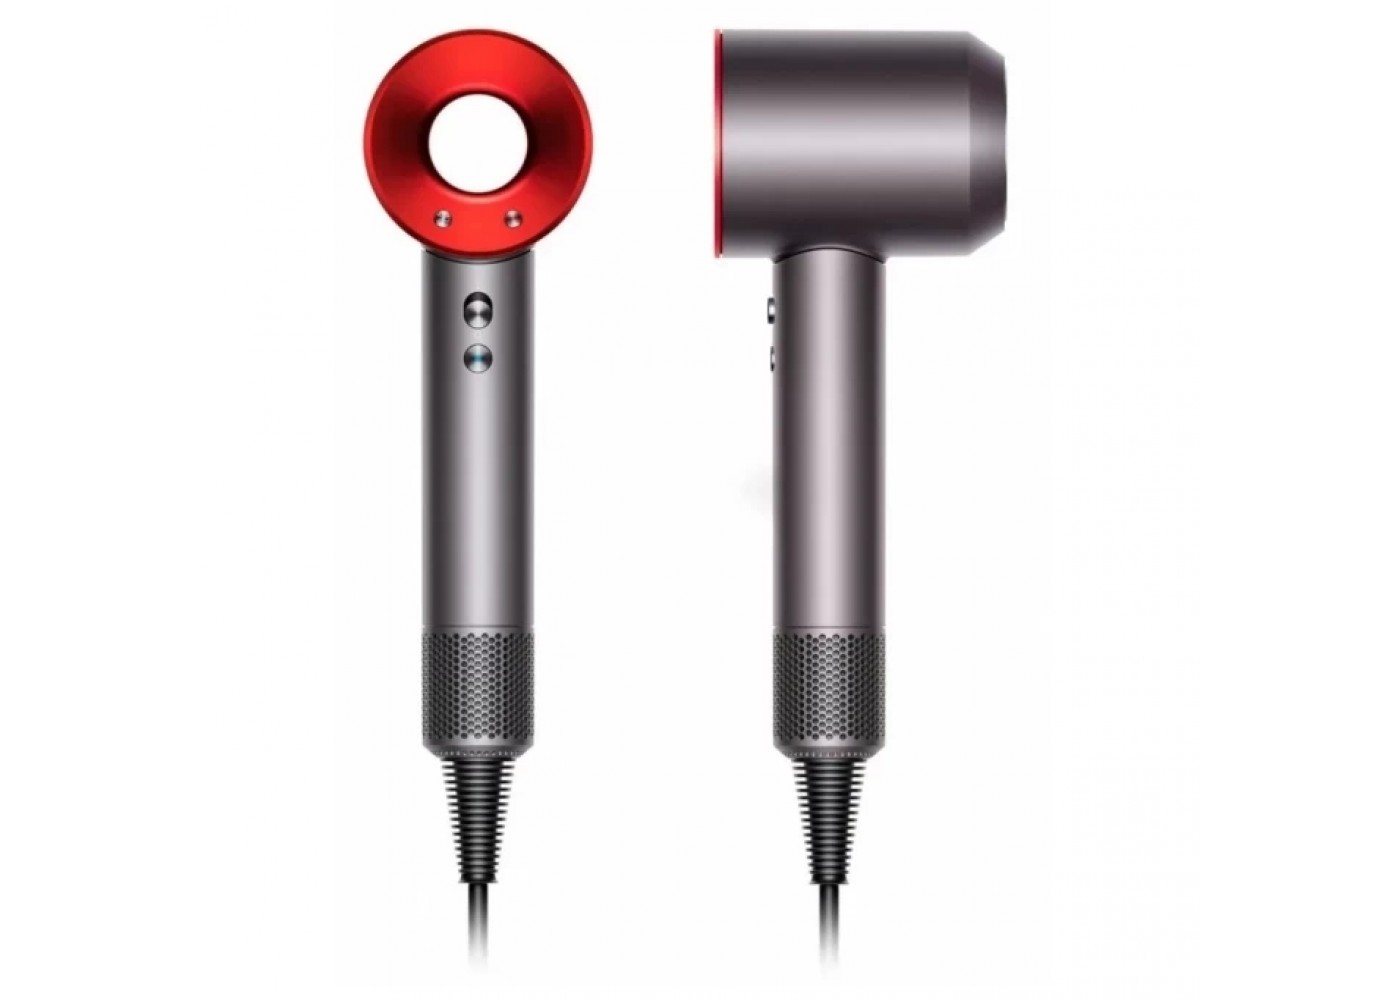 Фен для волос XiaoMi SenCiciMen Hair Dryer HD15, Красный